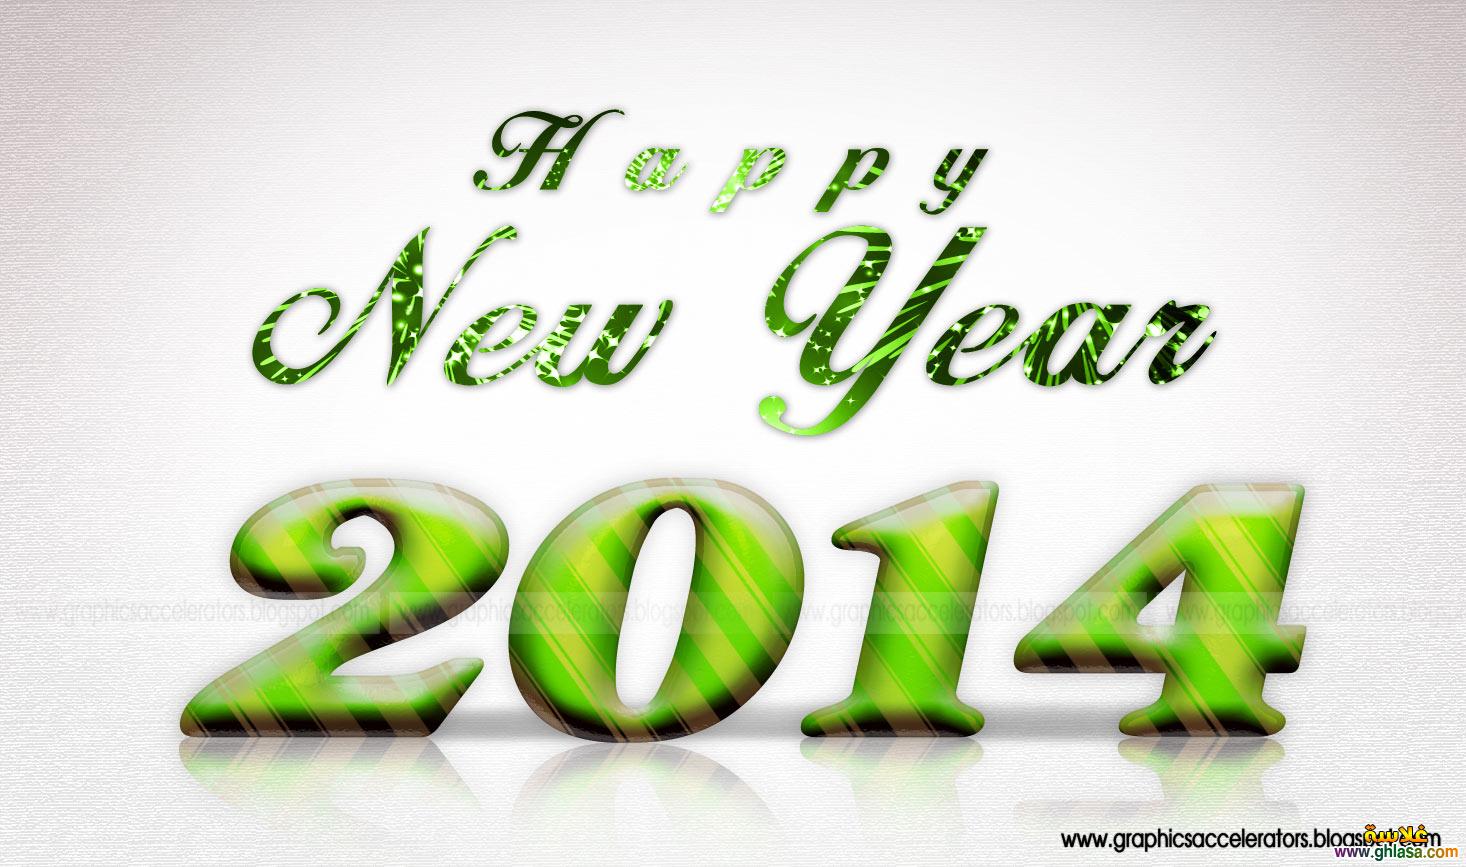 صور خلفيات واتساب سنة سعيدة جديدة 2014 , صور happy new year 2014 للواتساب